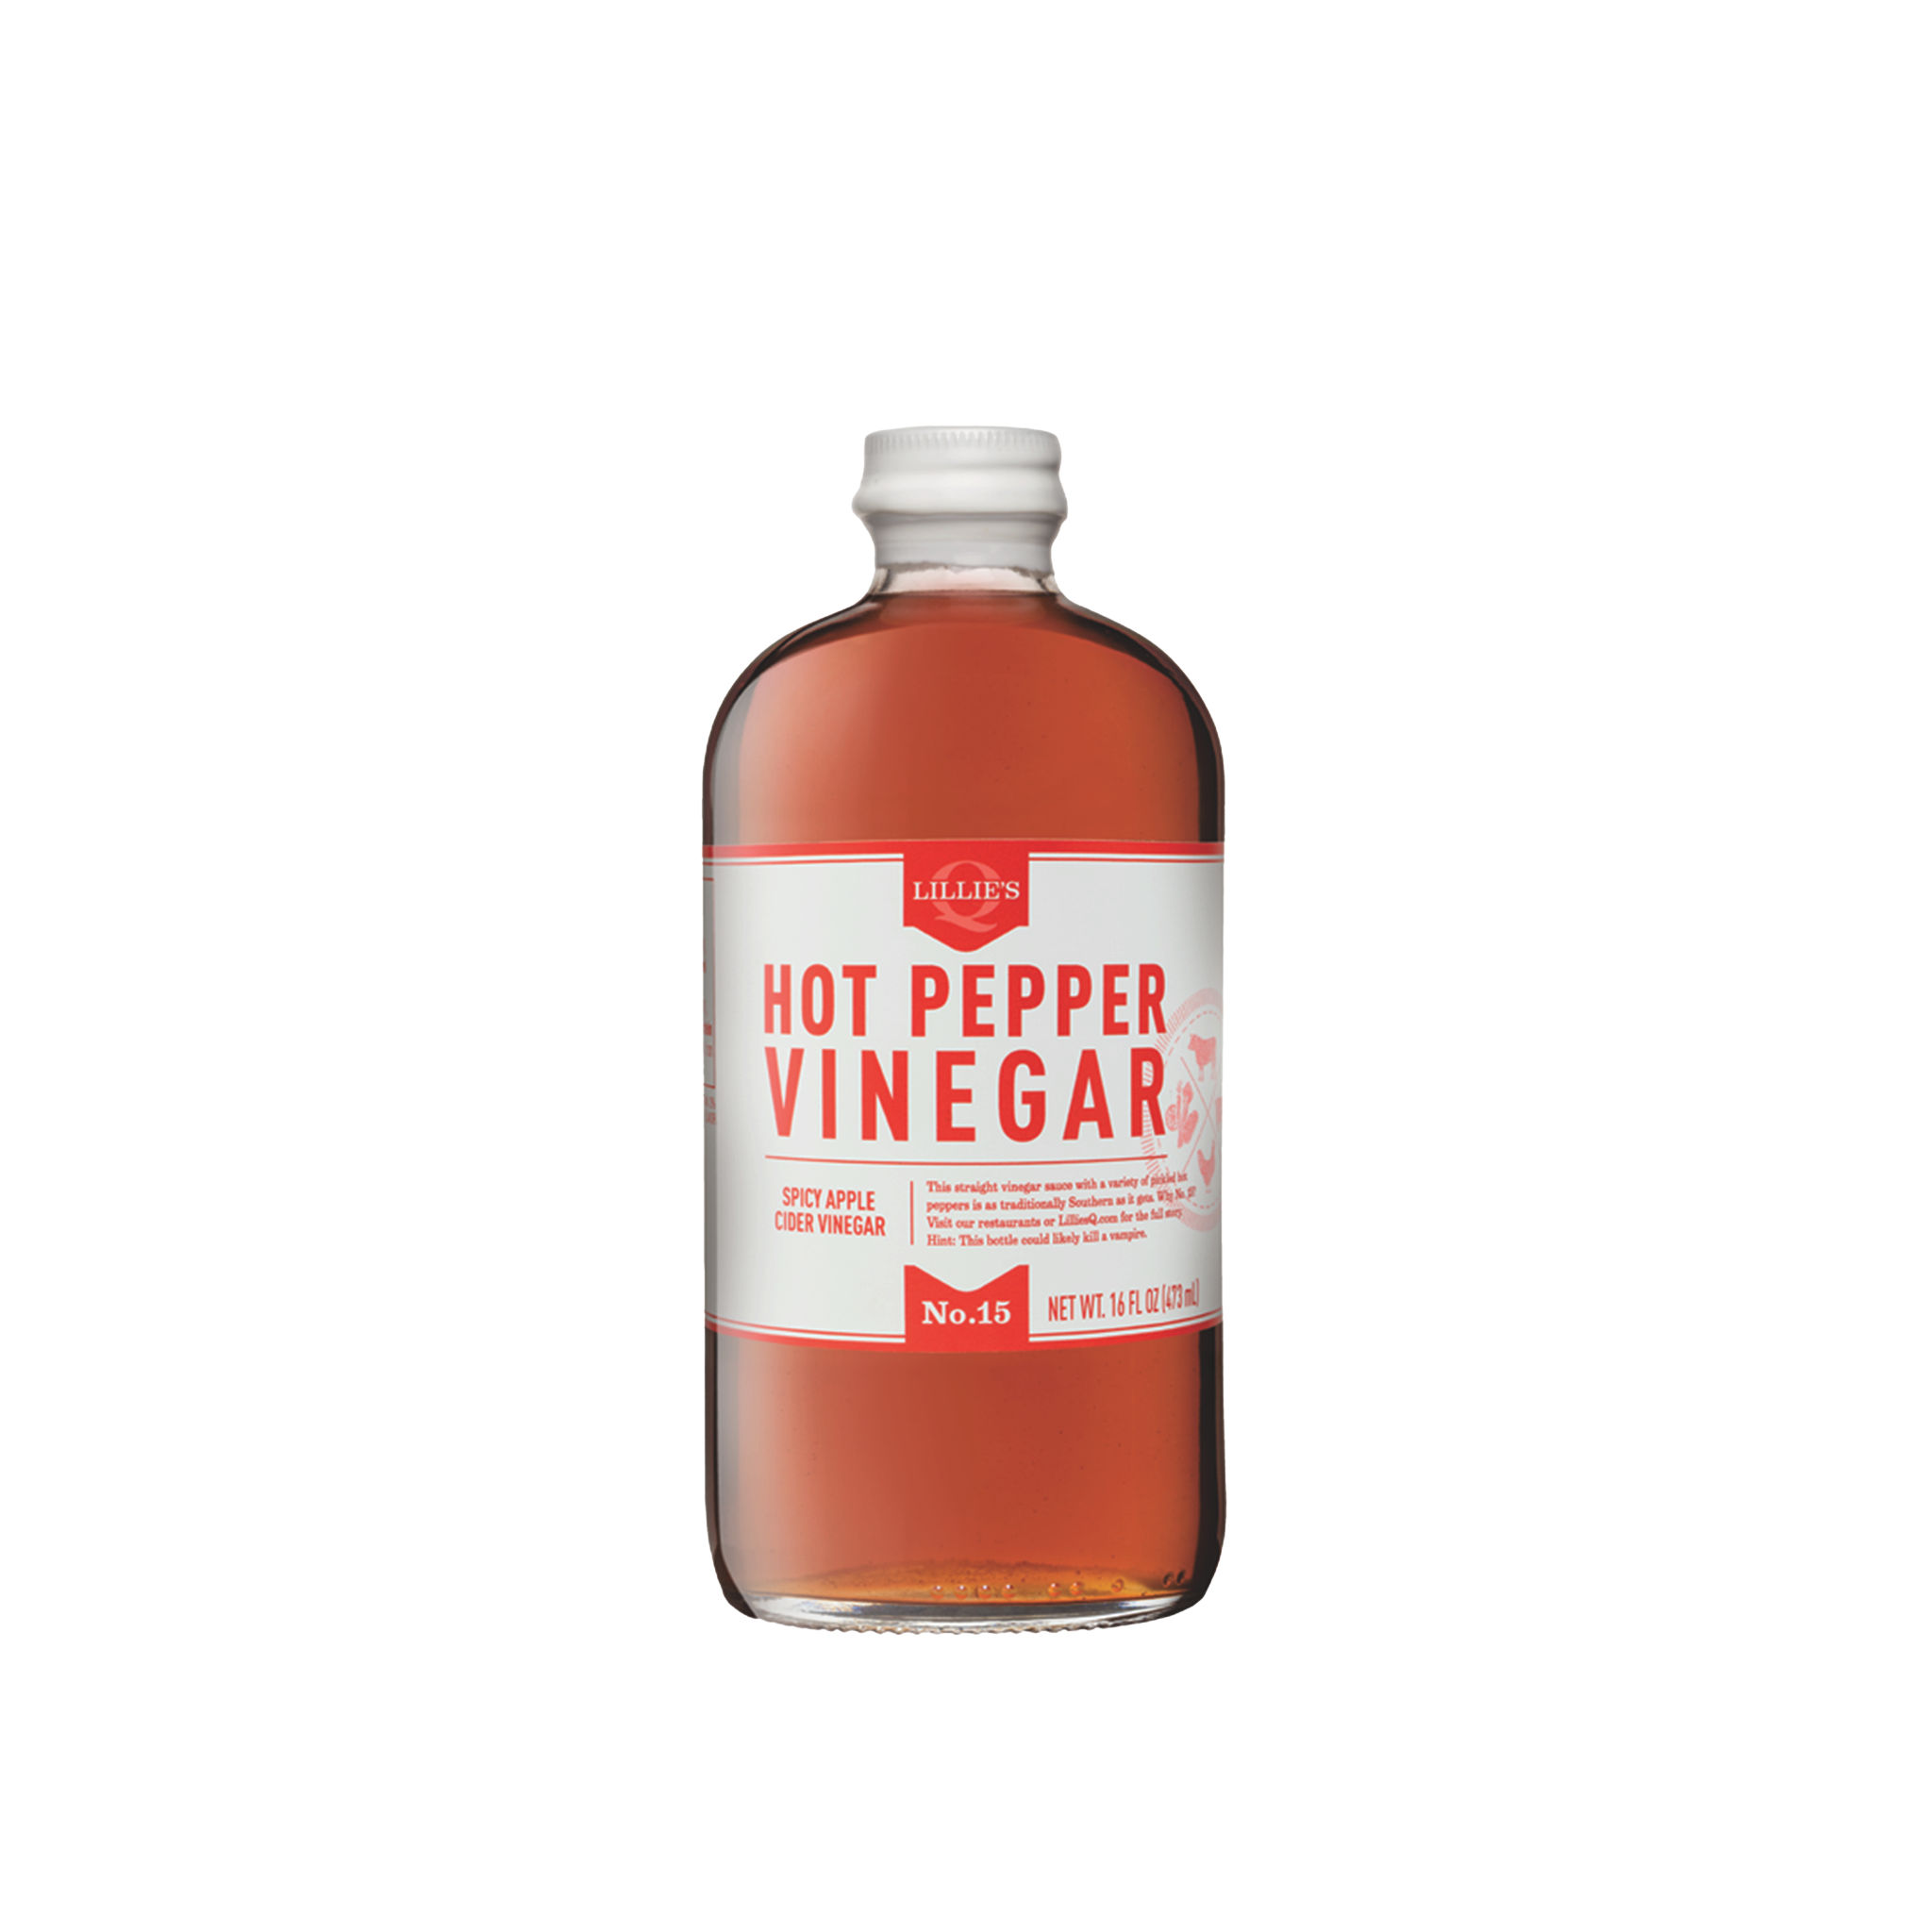 Hot Pepper Vinegar